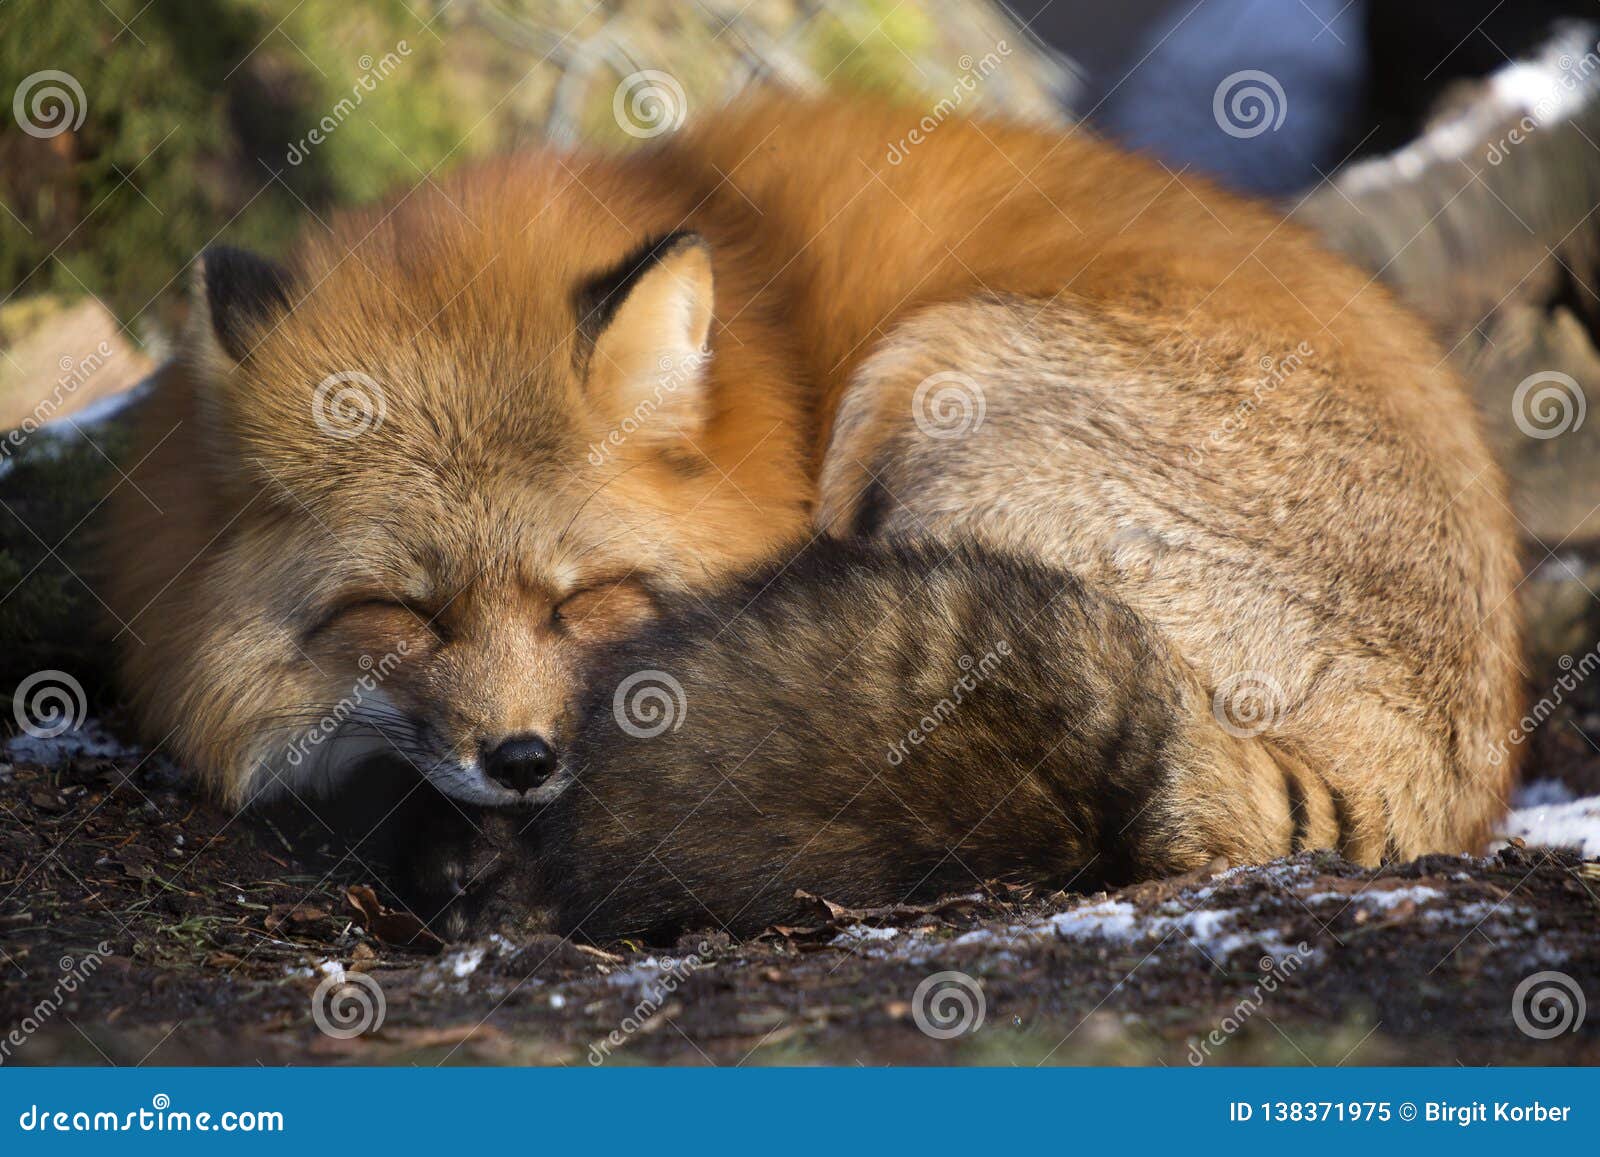 睡觉的狐狸高清摄影大图-千库网